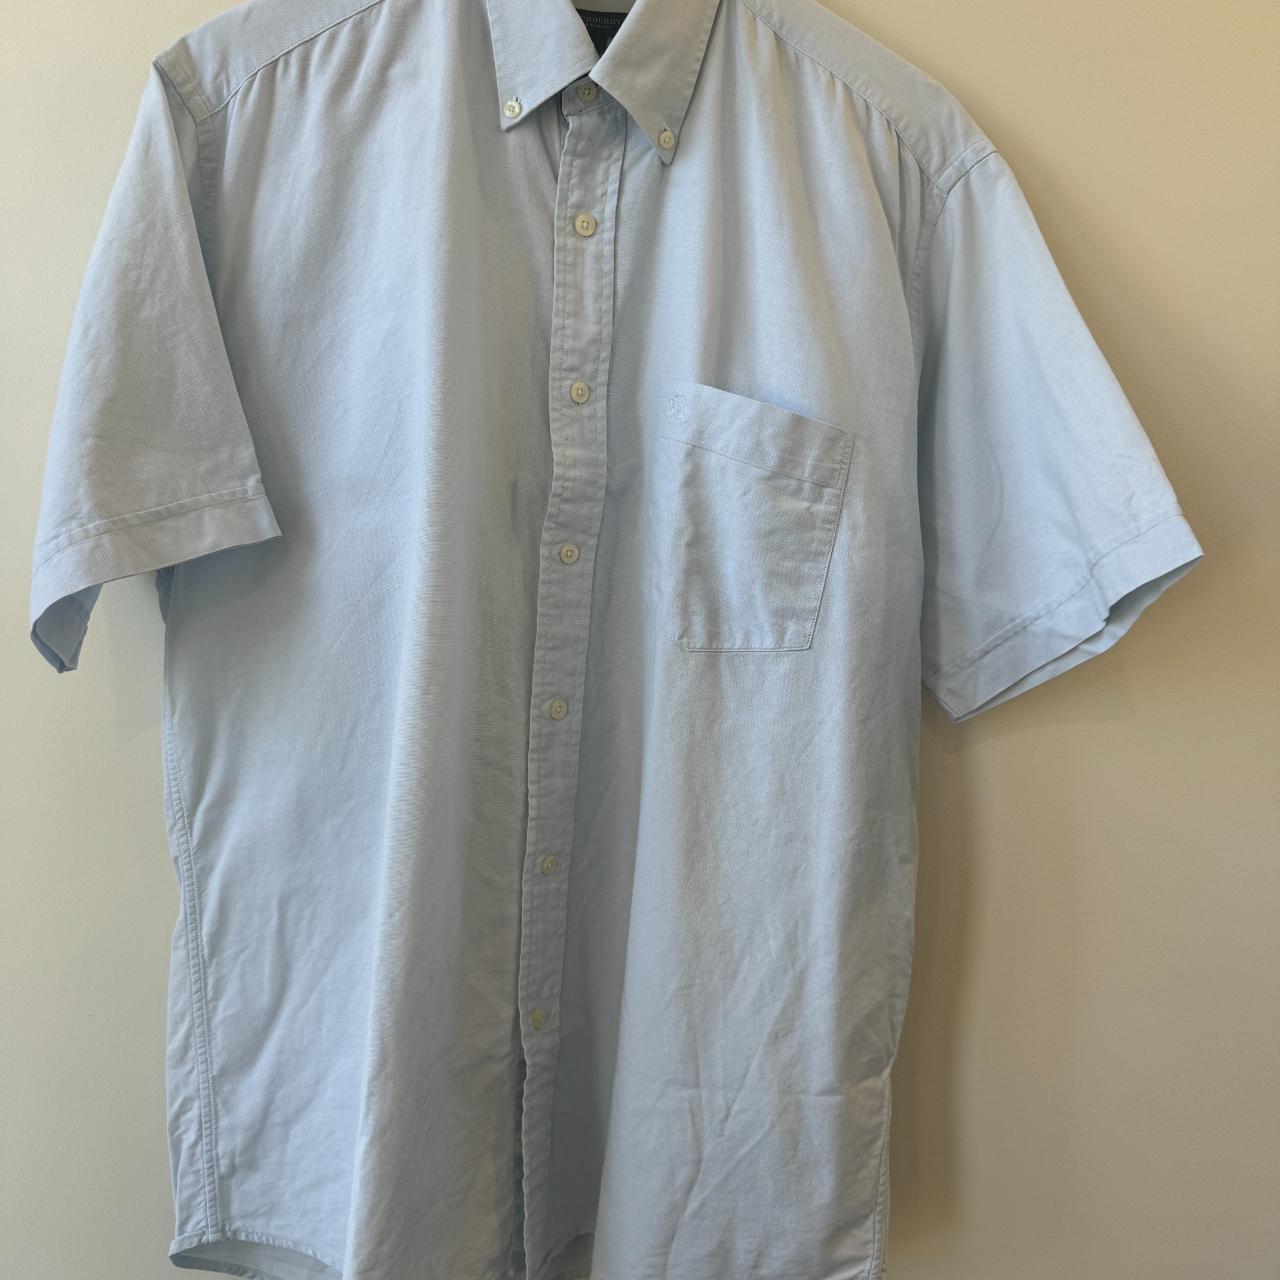 Burberry Short Sleeve Shirt Button Down Light Blue... - Depop